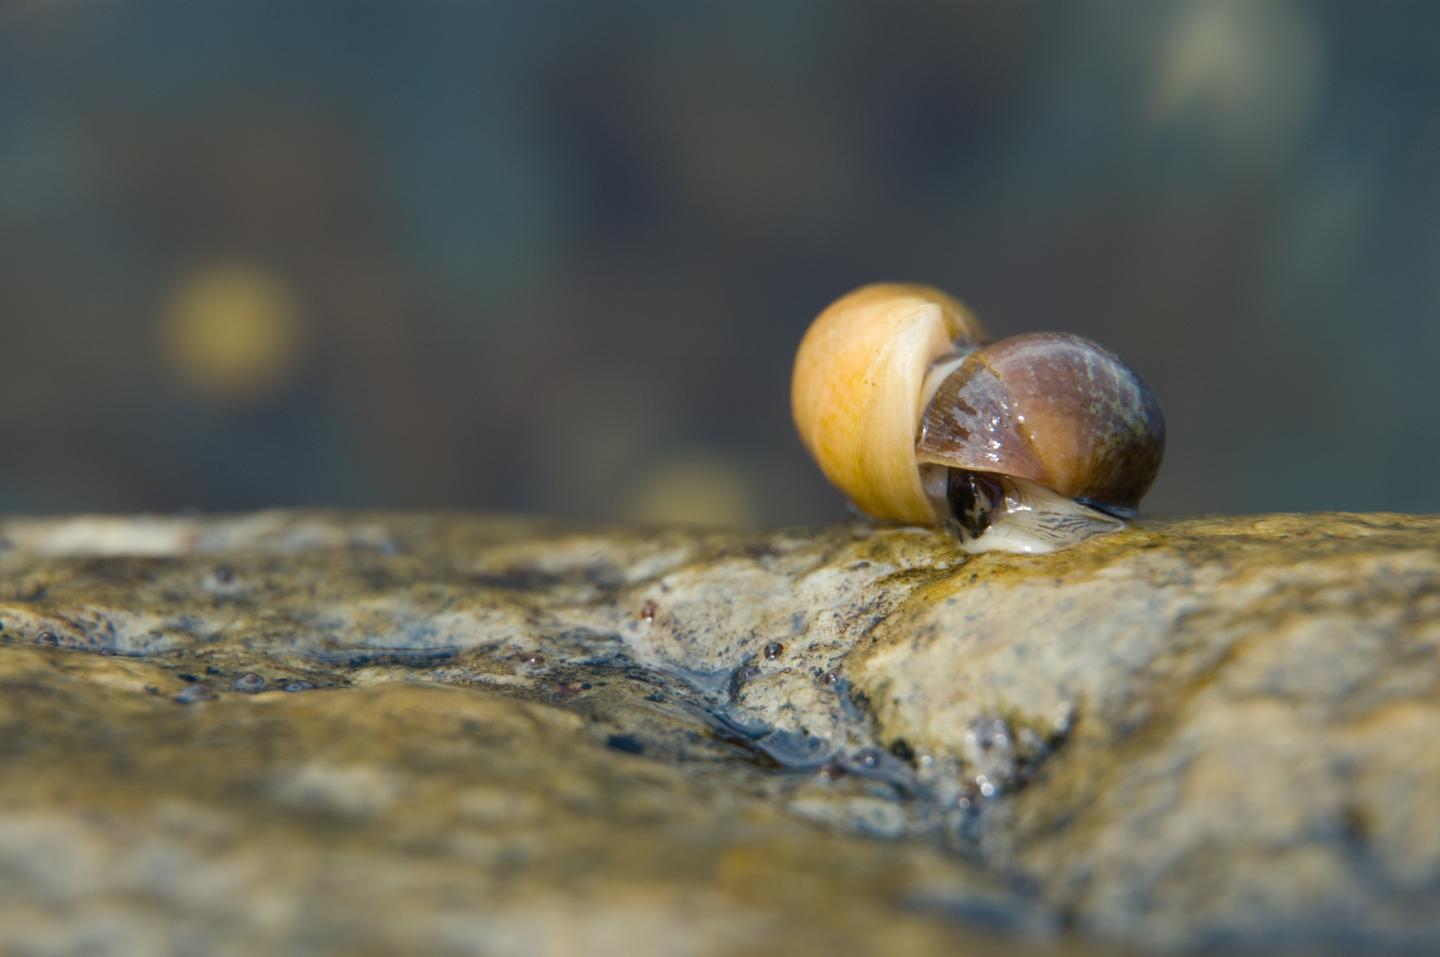 Snails: Mating intertidal marine snails